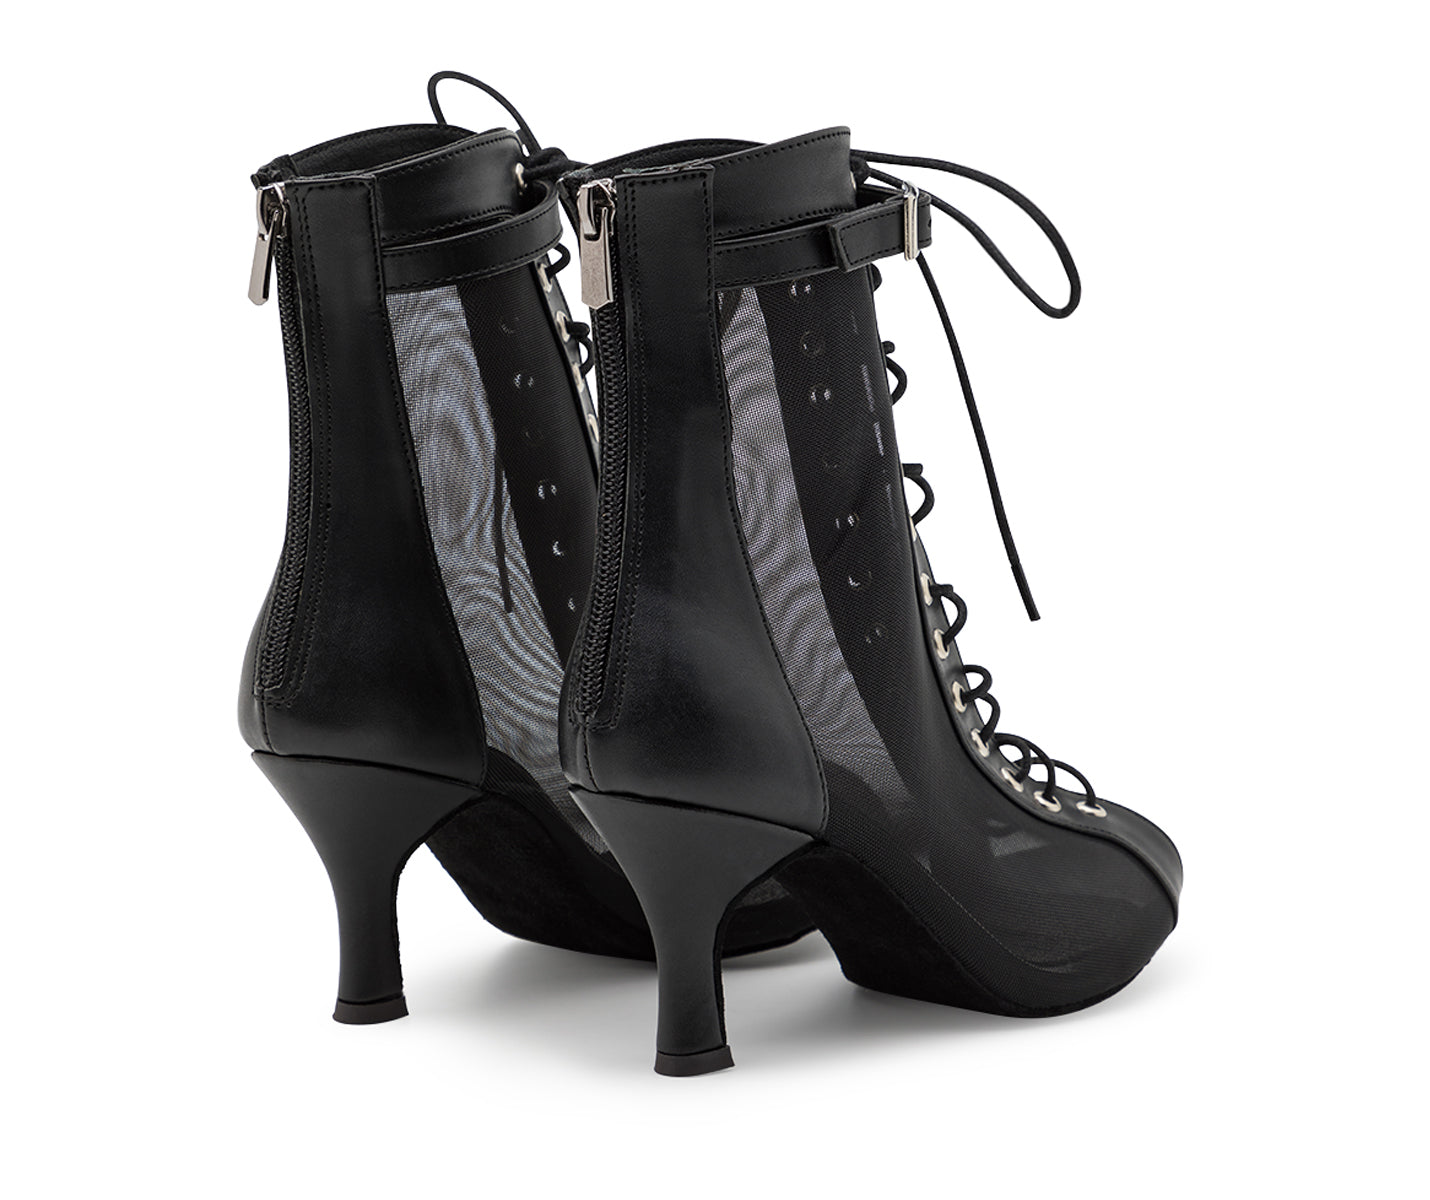 Tarff Dance Shoes en negro